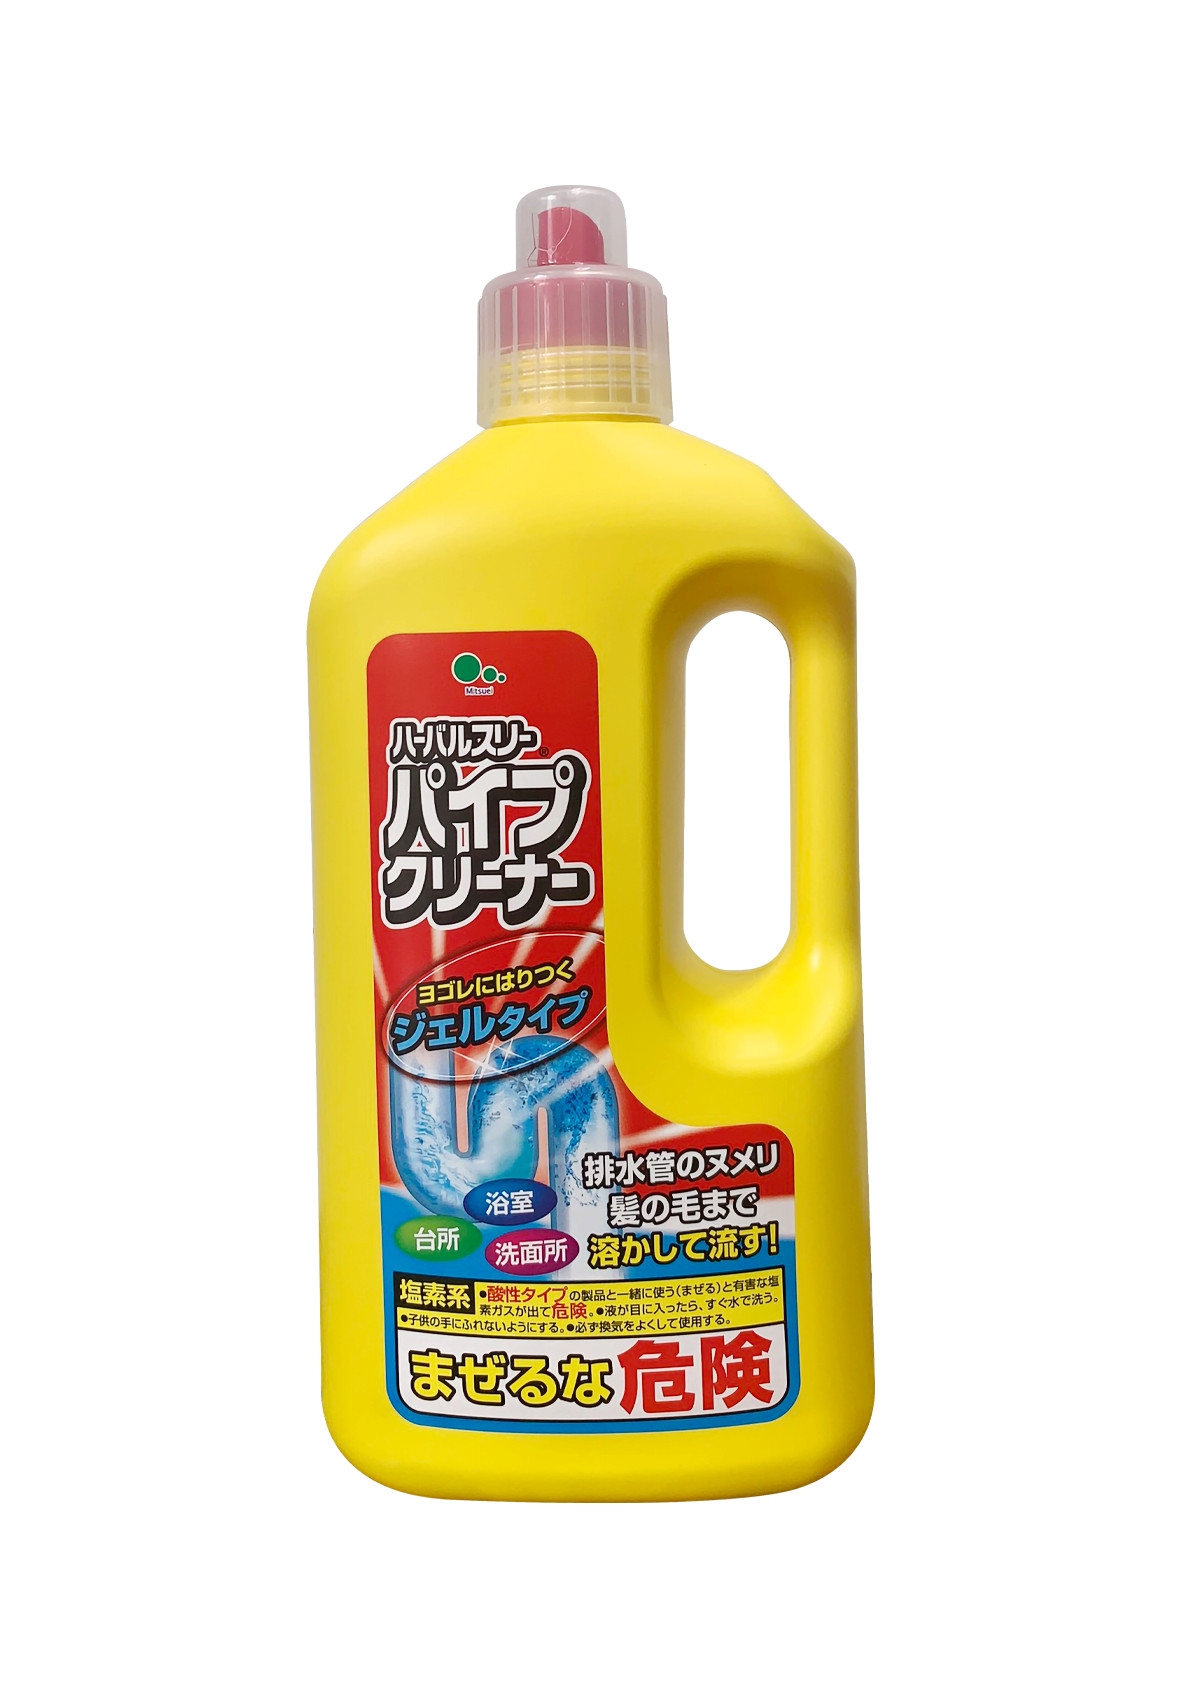 Nước thông cống SHINKOU (Hàng Nội Địa Nhật Bản) - Sản phẩm không mùi, khử trùng, khử mùi hôi đường ống - Phân hủy mạnh mẽ rác hữu cơ - Không làm hư hại đường ống